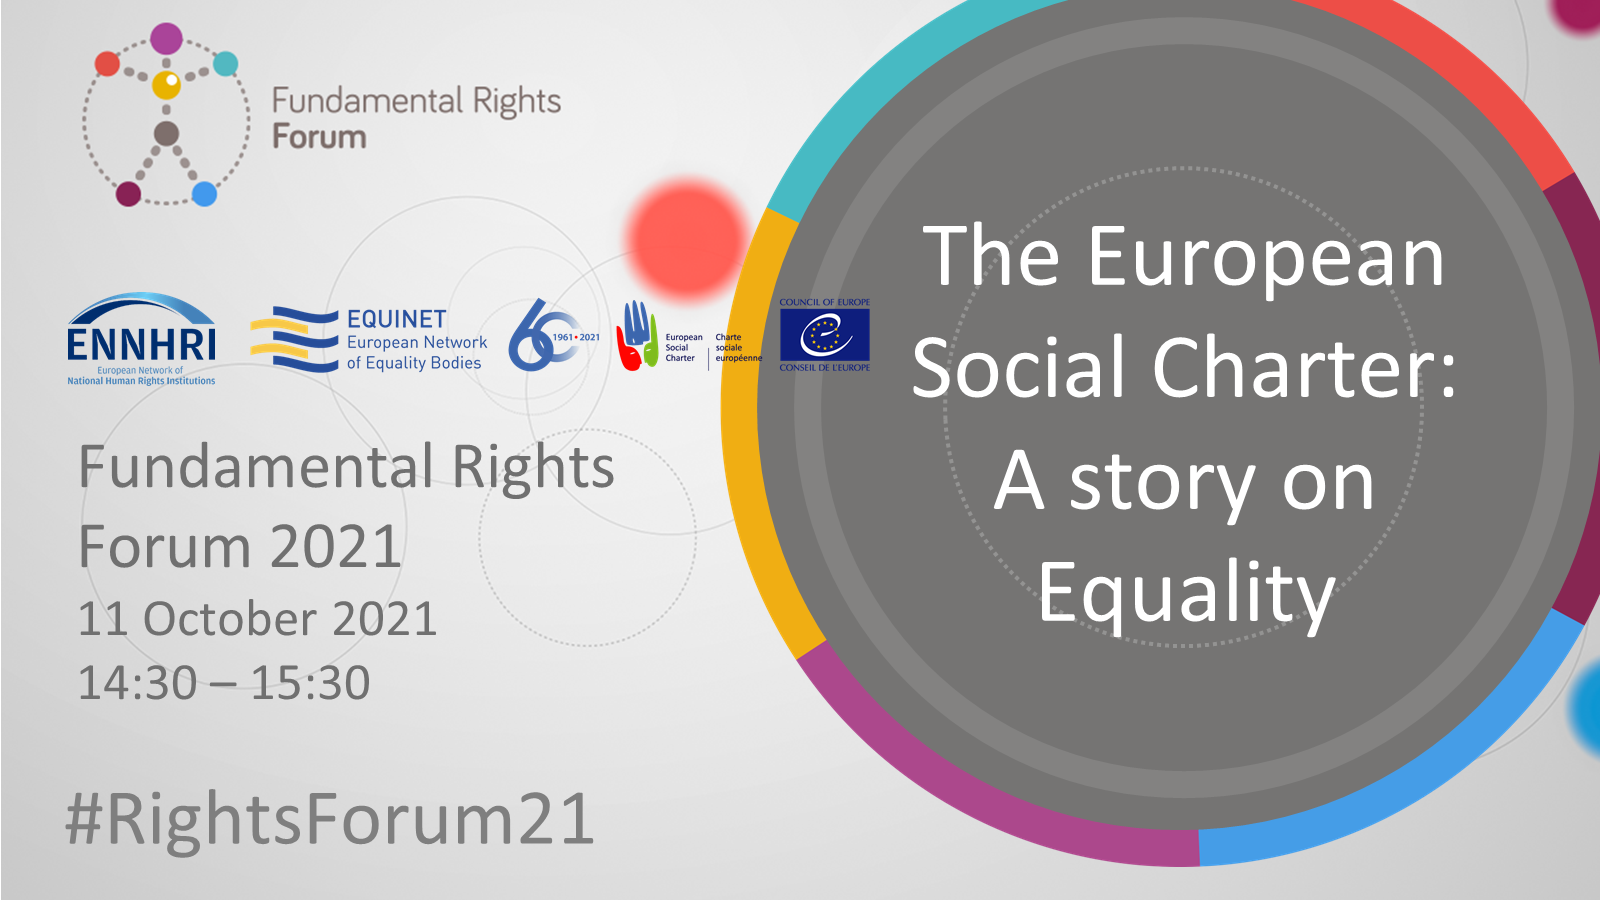 La Charte sociale européenne : une histoire d'égalité